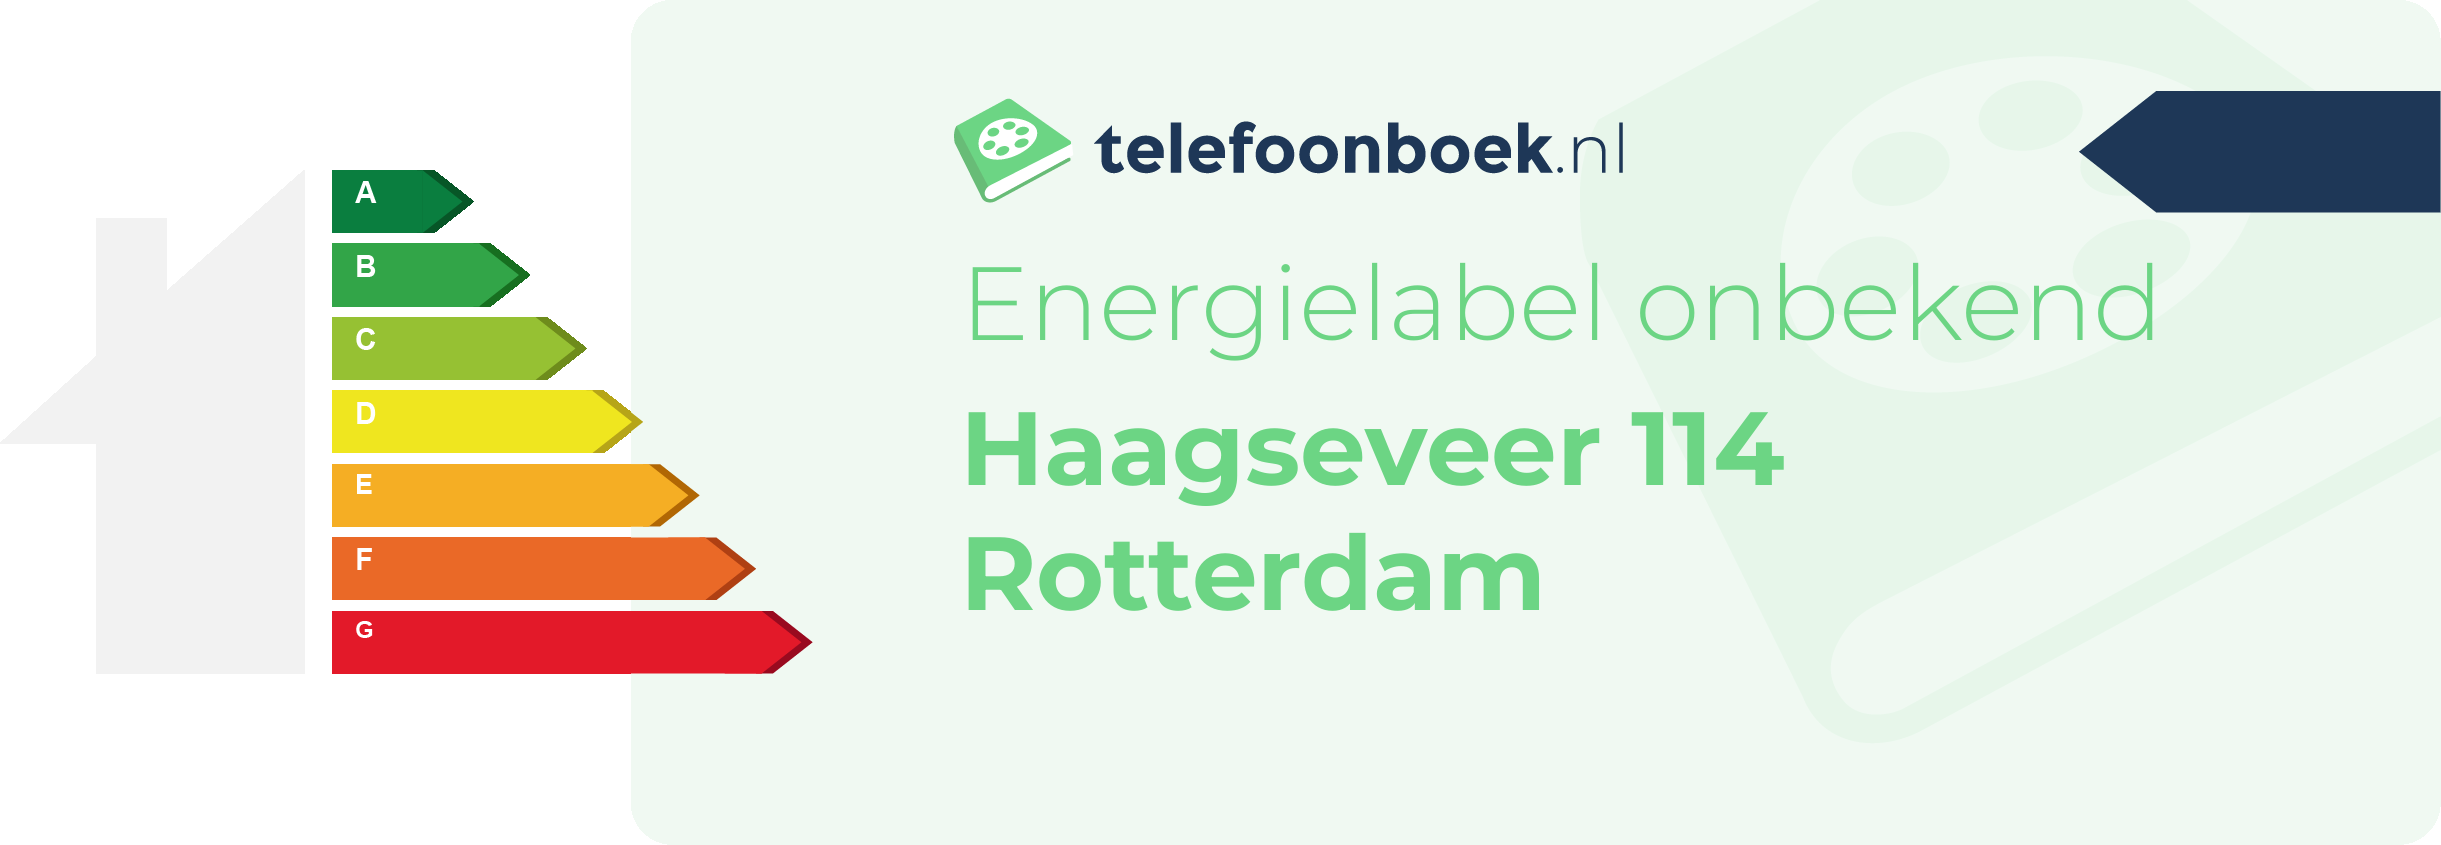 Energielabel Haagseveer 114 Rotterdam